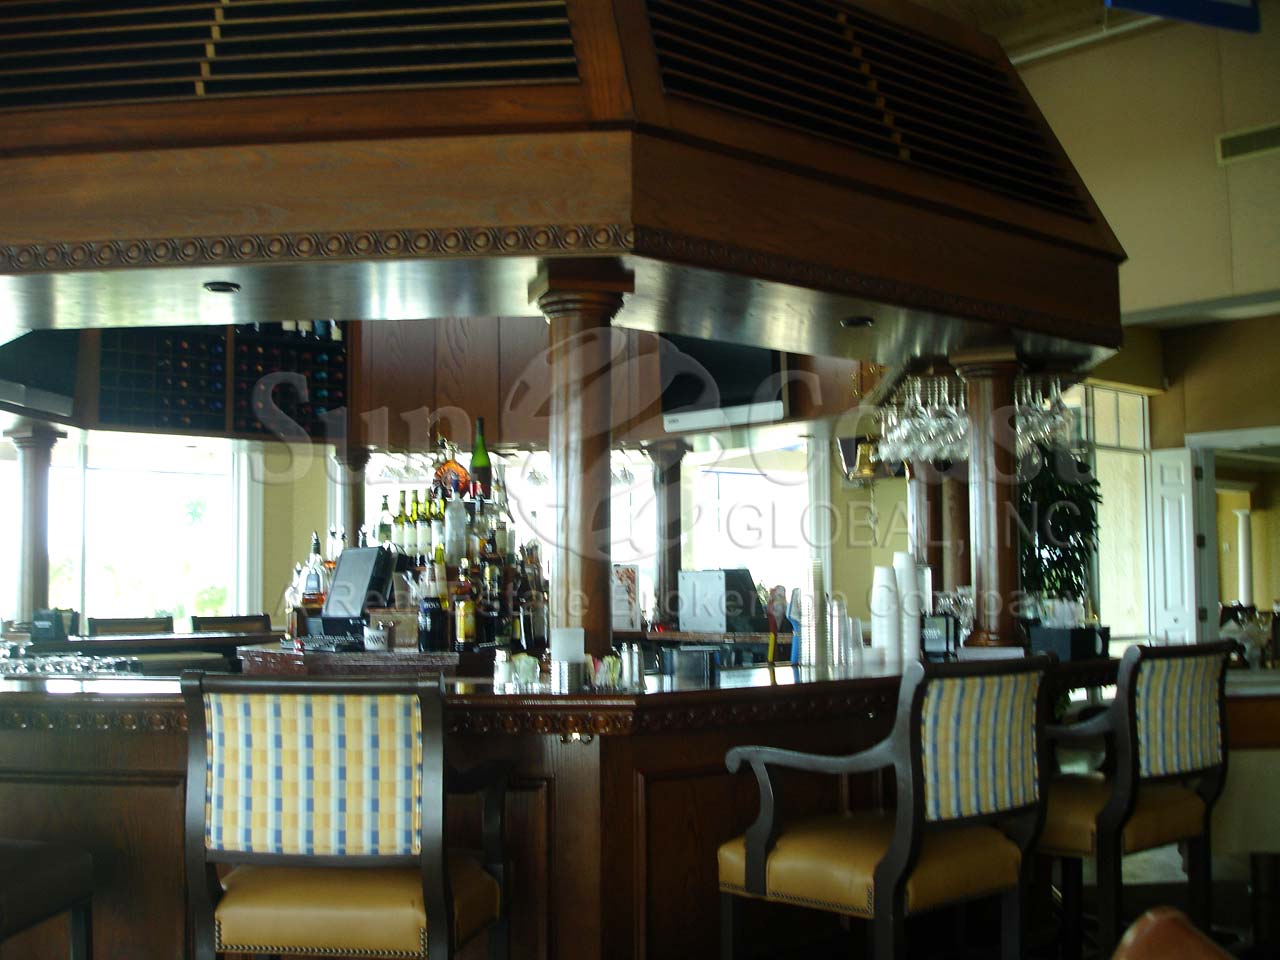 PELICAN ISLE Yacht Club Bar